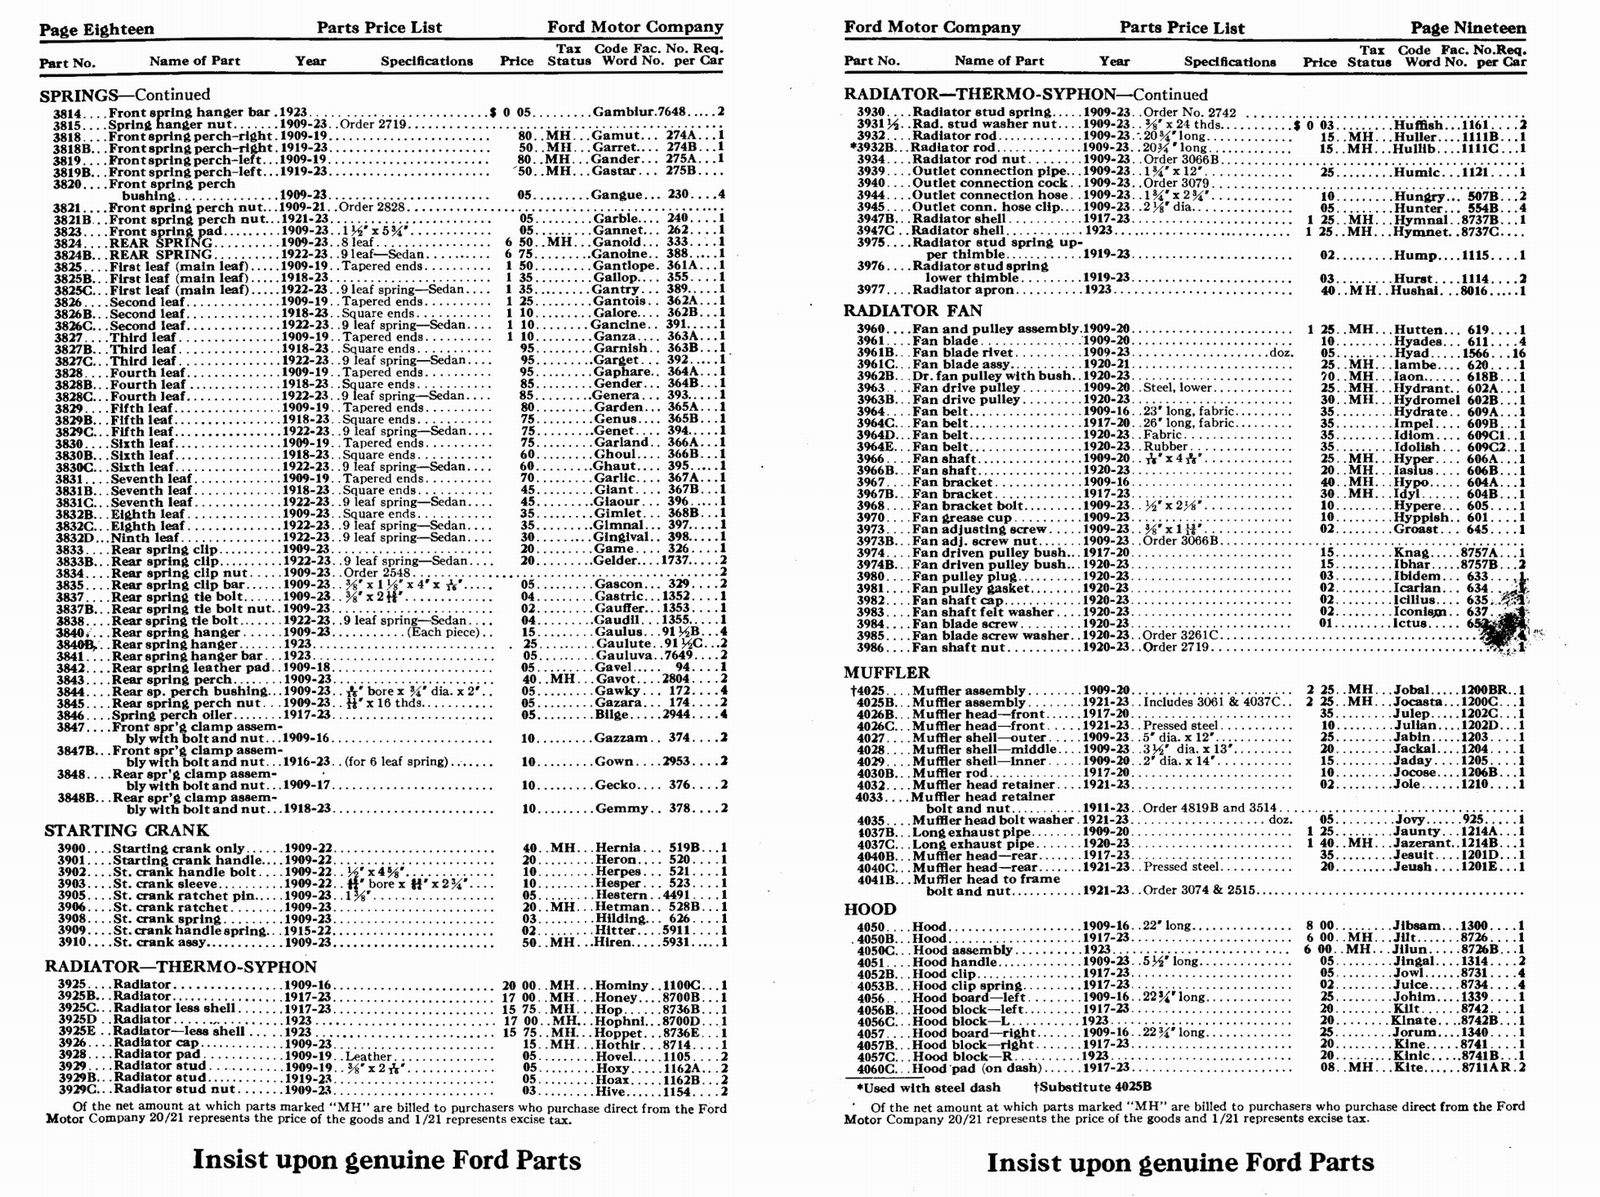 n_1923 Ford Price List-18-19.jpg